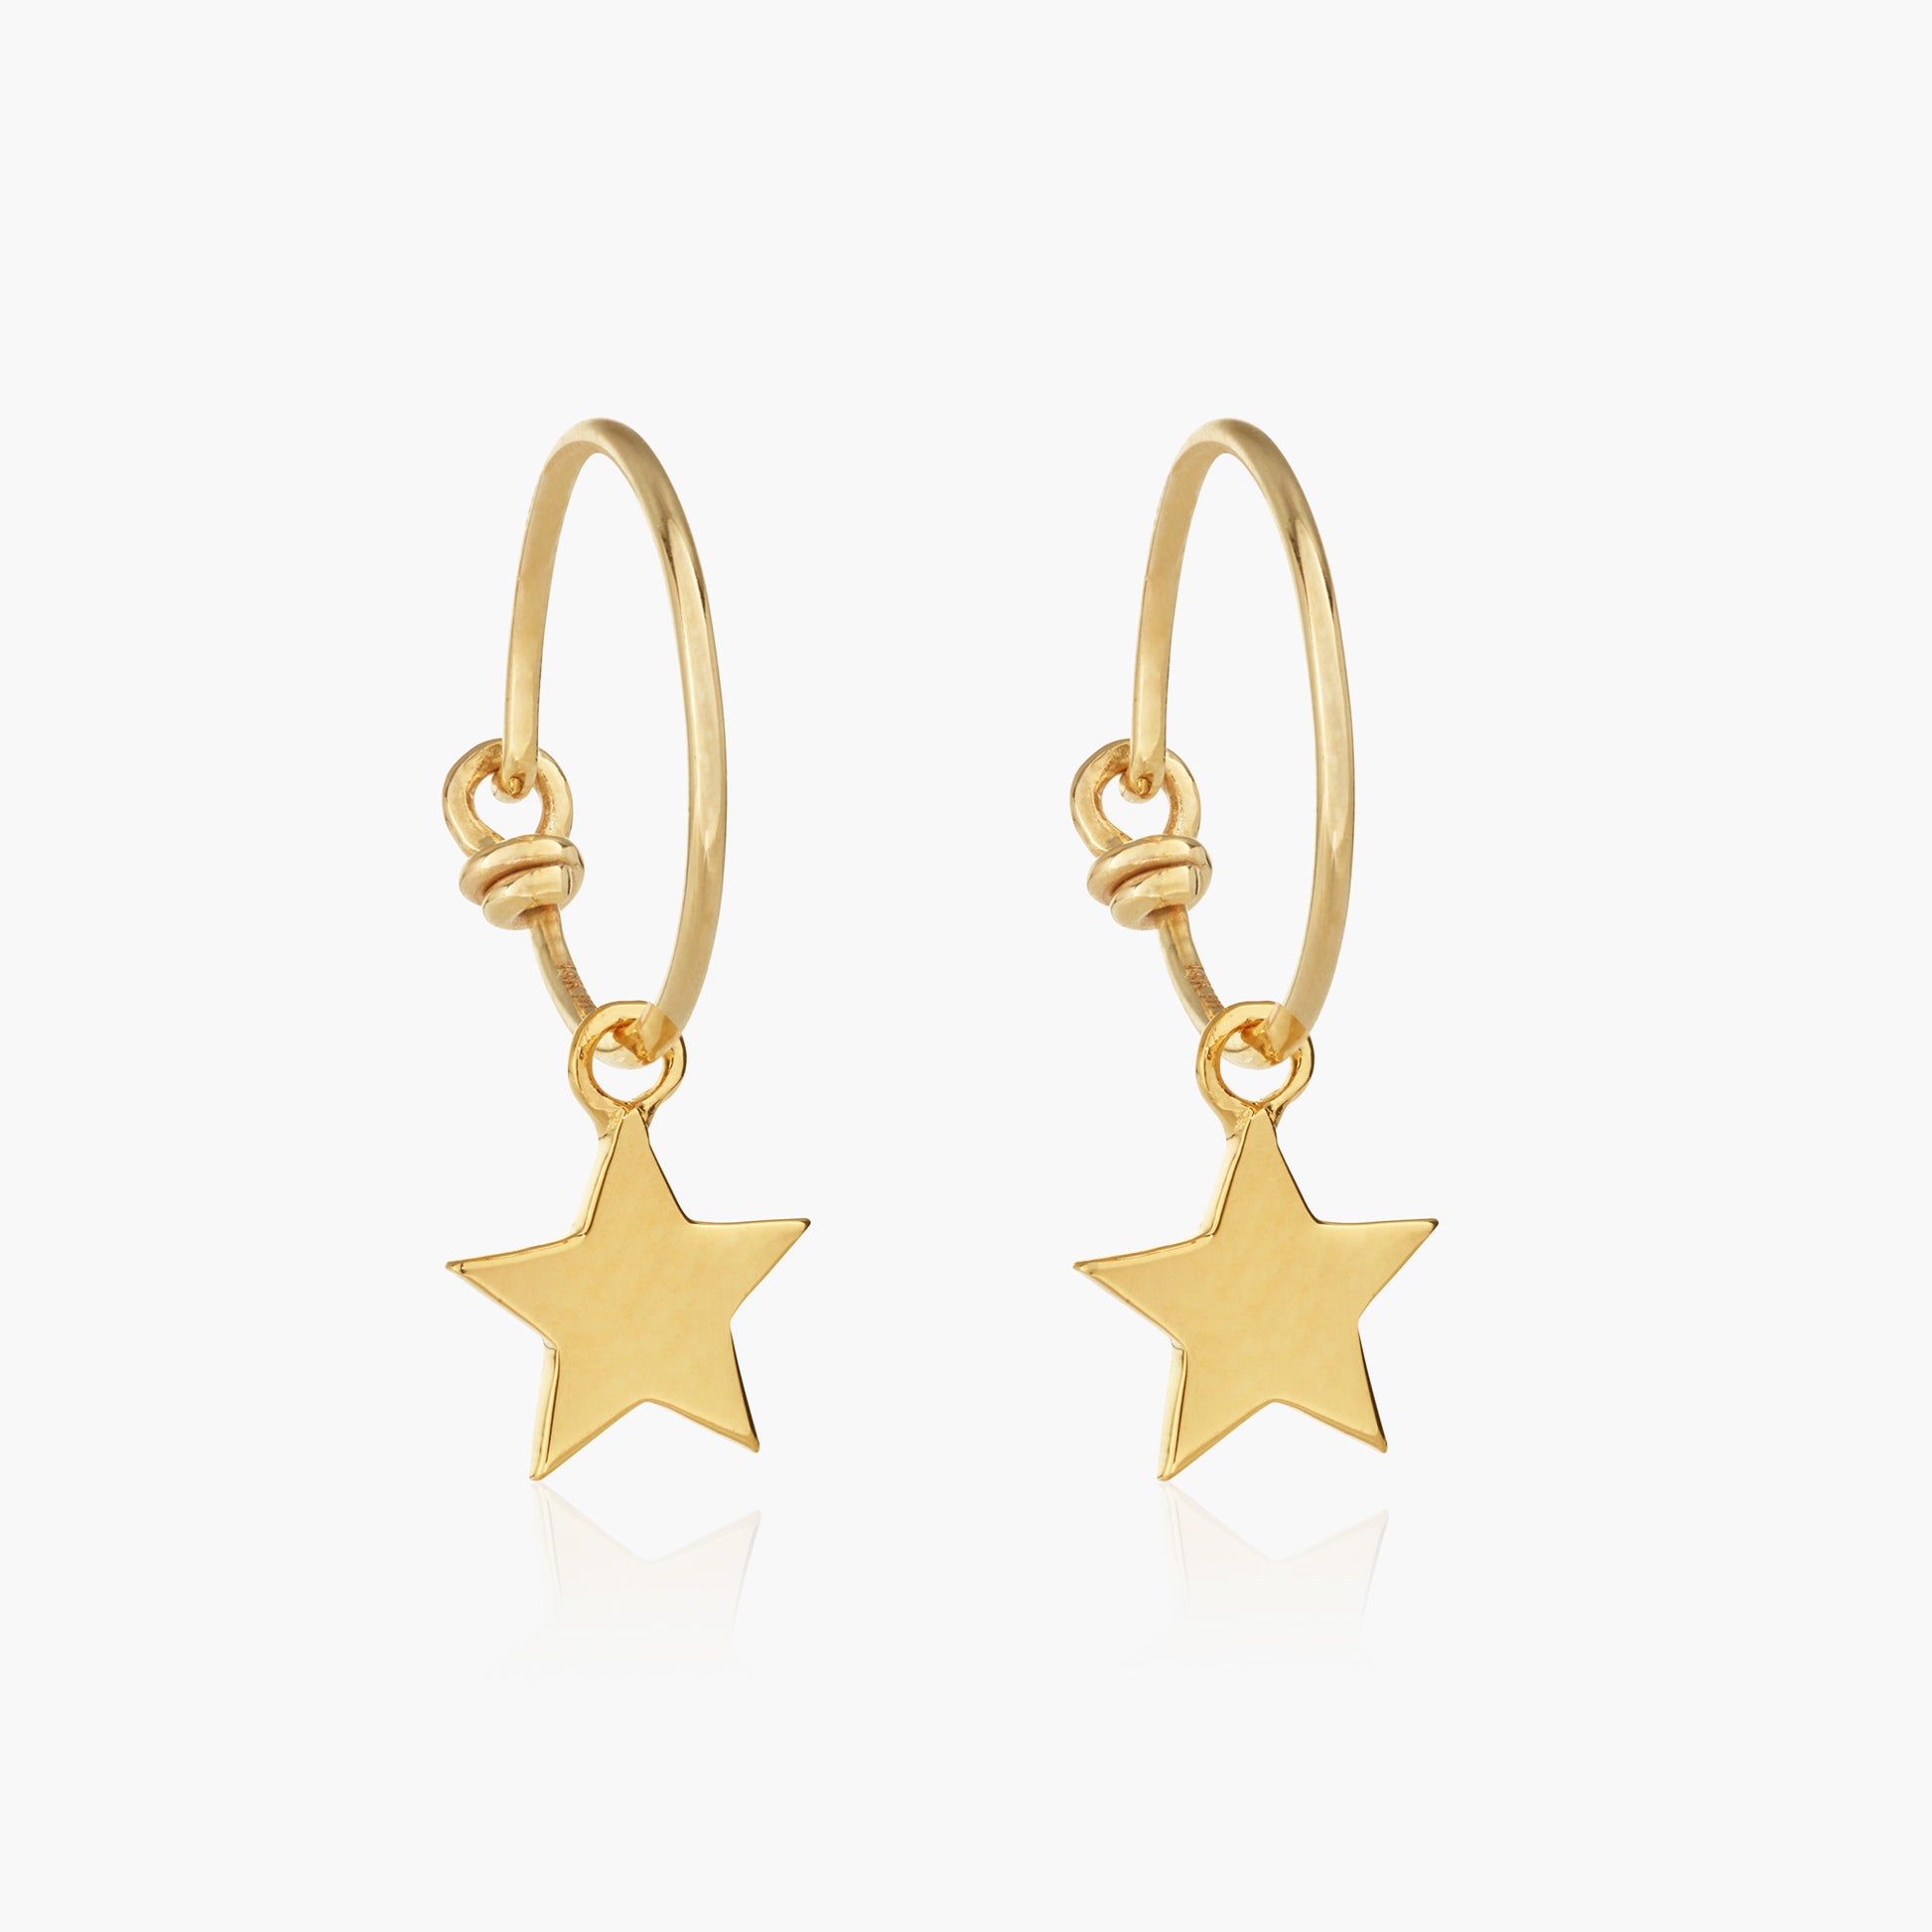 wish upon a star gold vermeil hoop earrings (vermeil)